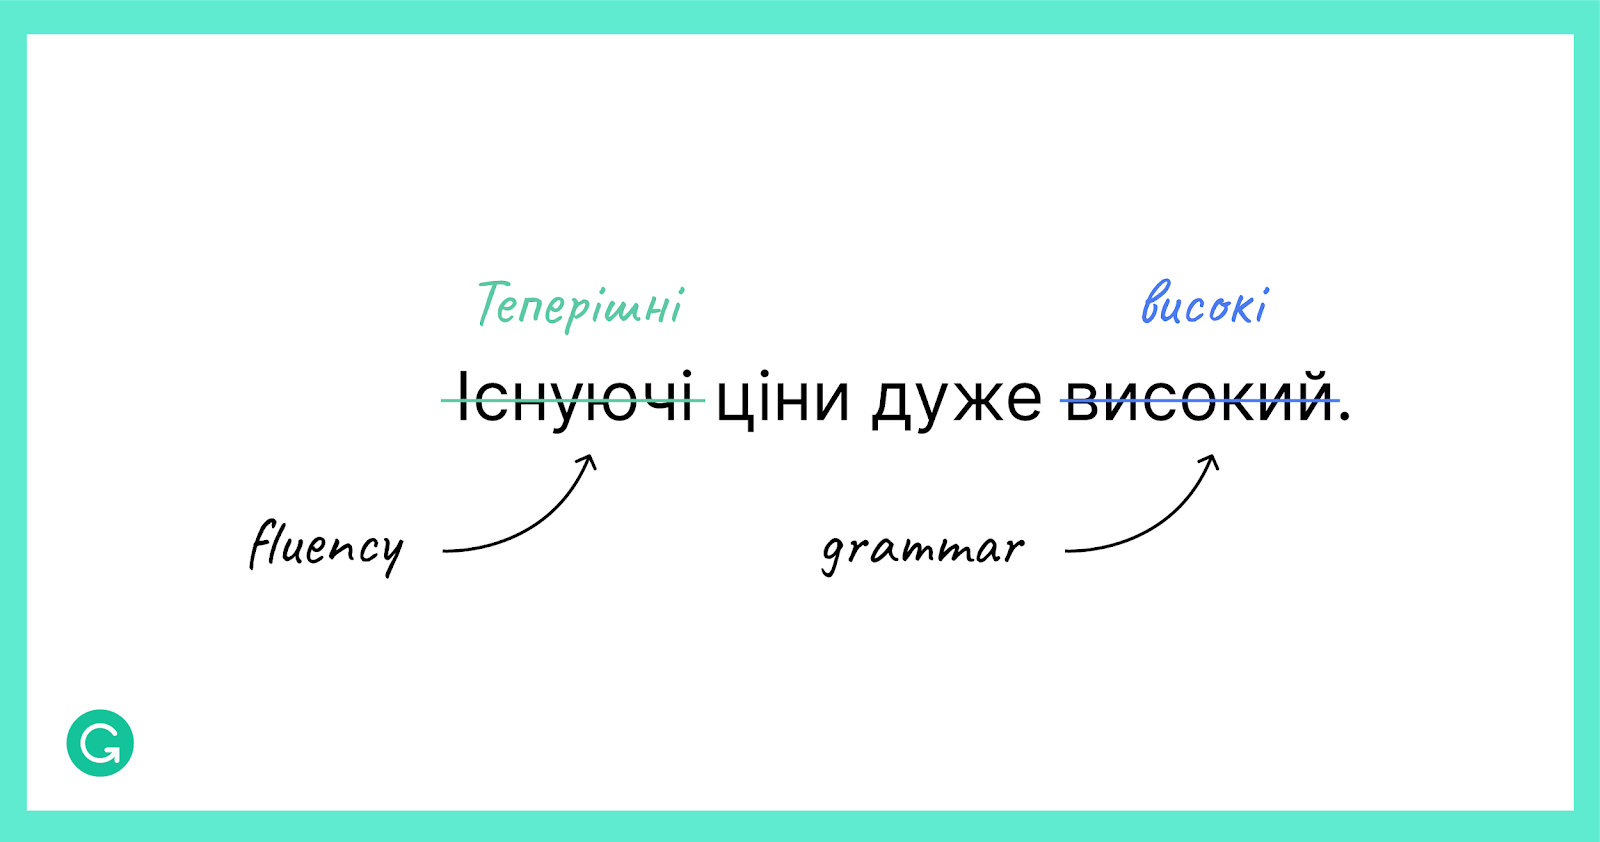 Приклад речення українською мовою, анотованого для виправлення стилістичних і граматичних помилок